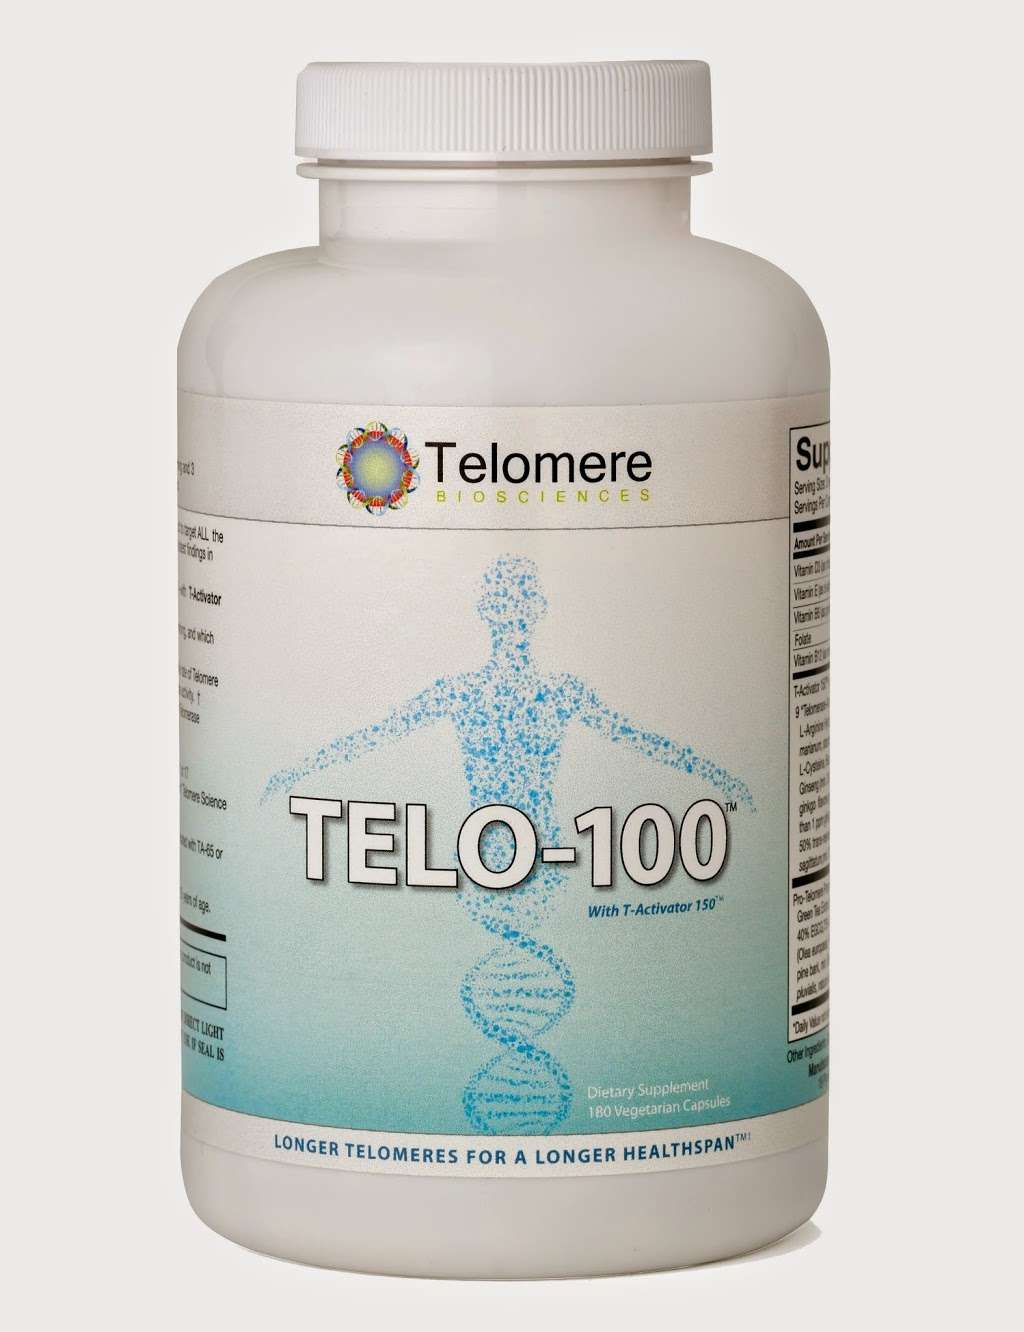 Telomere Biosciences LLC | 10 North St, Cold Spring, NY 10516, USA